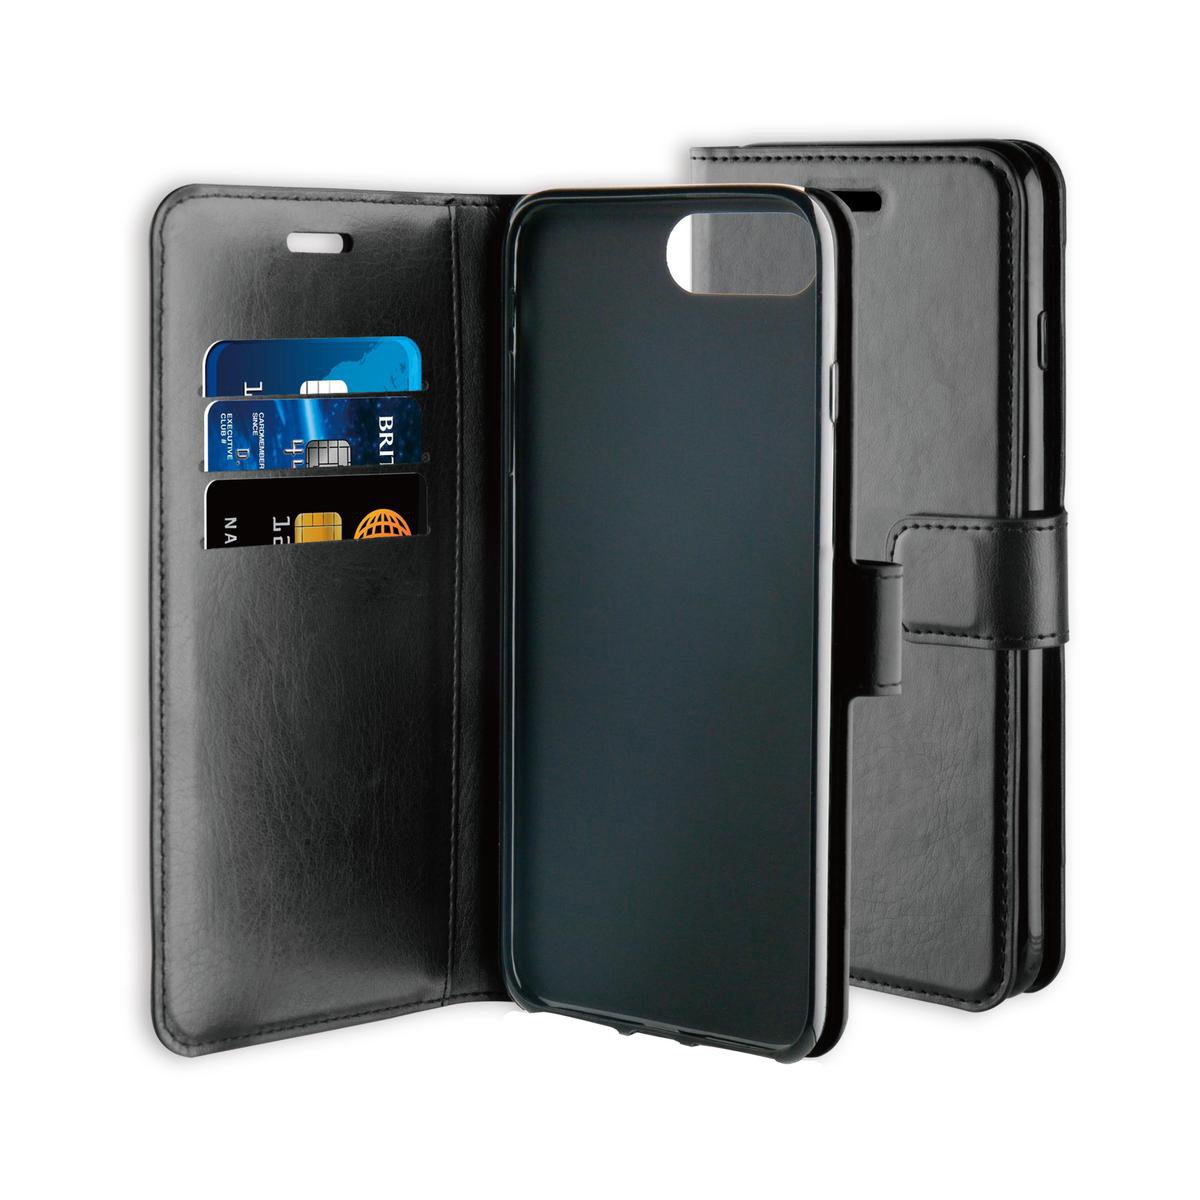 Productiviteit aansporing Tenslotte BeHello iPhone 8 Plus 7 Plus 6s Plus 6 Plus Hoesje – Gel Wallet Case Met  Ruimte Voor 3 Pasjes – Zwart – BestBuyHoesjes.nl